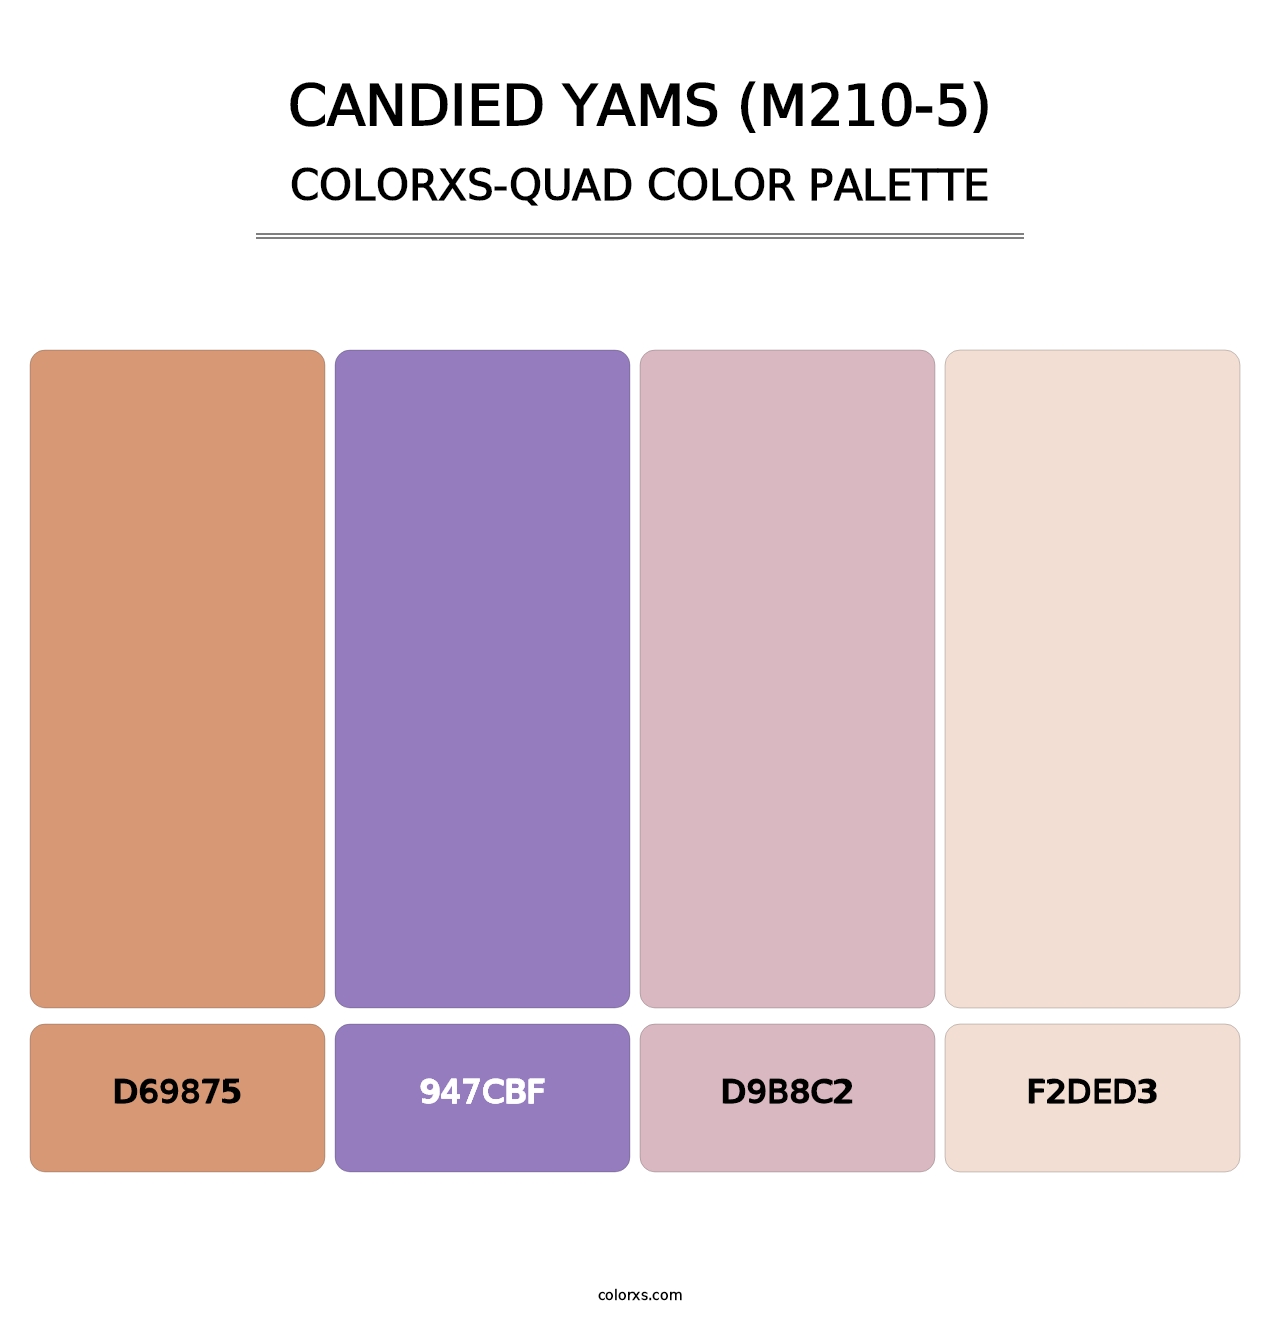 Candied Yams (M210-5) - Colorxs Quad Palette